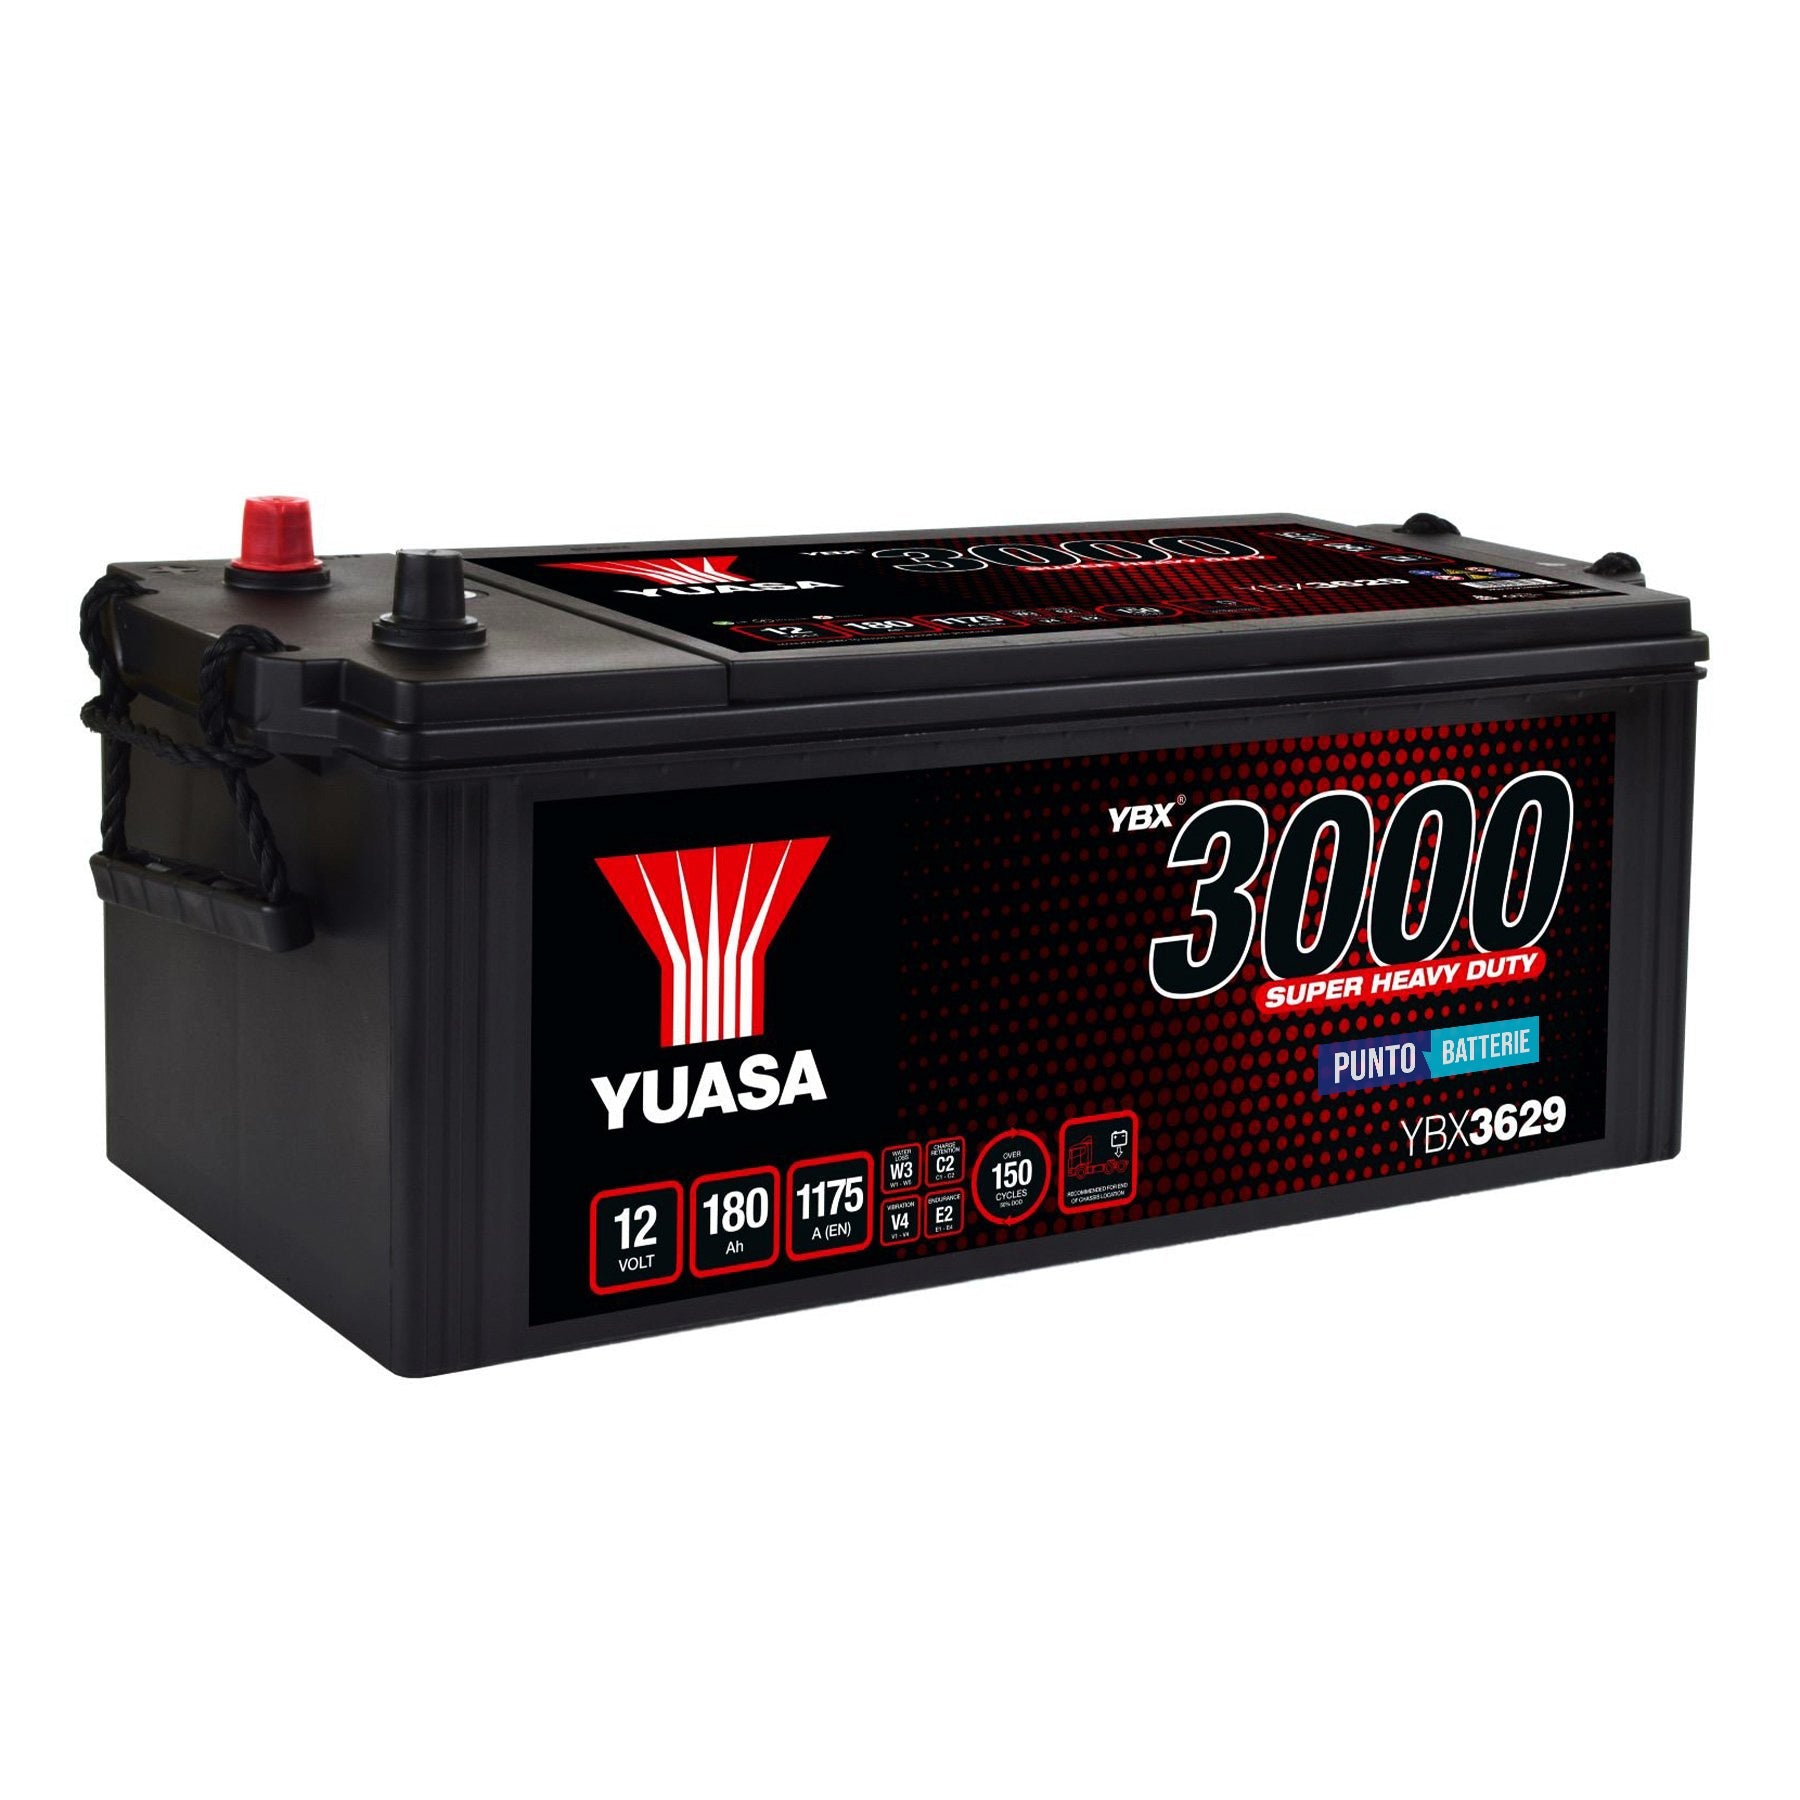 Batteria originale Yuasa YBX3000 YBX3629, dimensioni 511 x 222 x 215, polo positivo a sinistra, 12 volt, 180 amperora, 1175 ampere. Batteria per camion e veicoli pesanti.